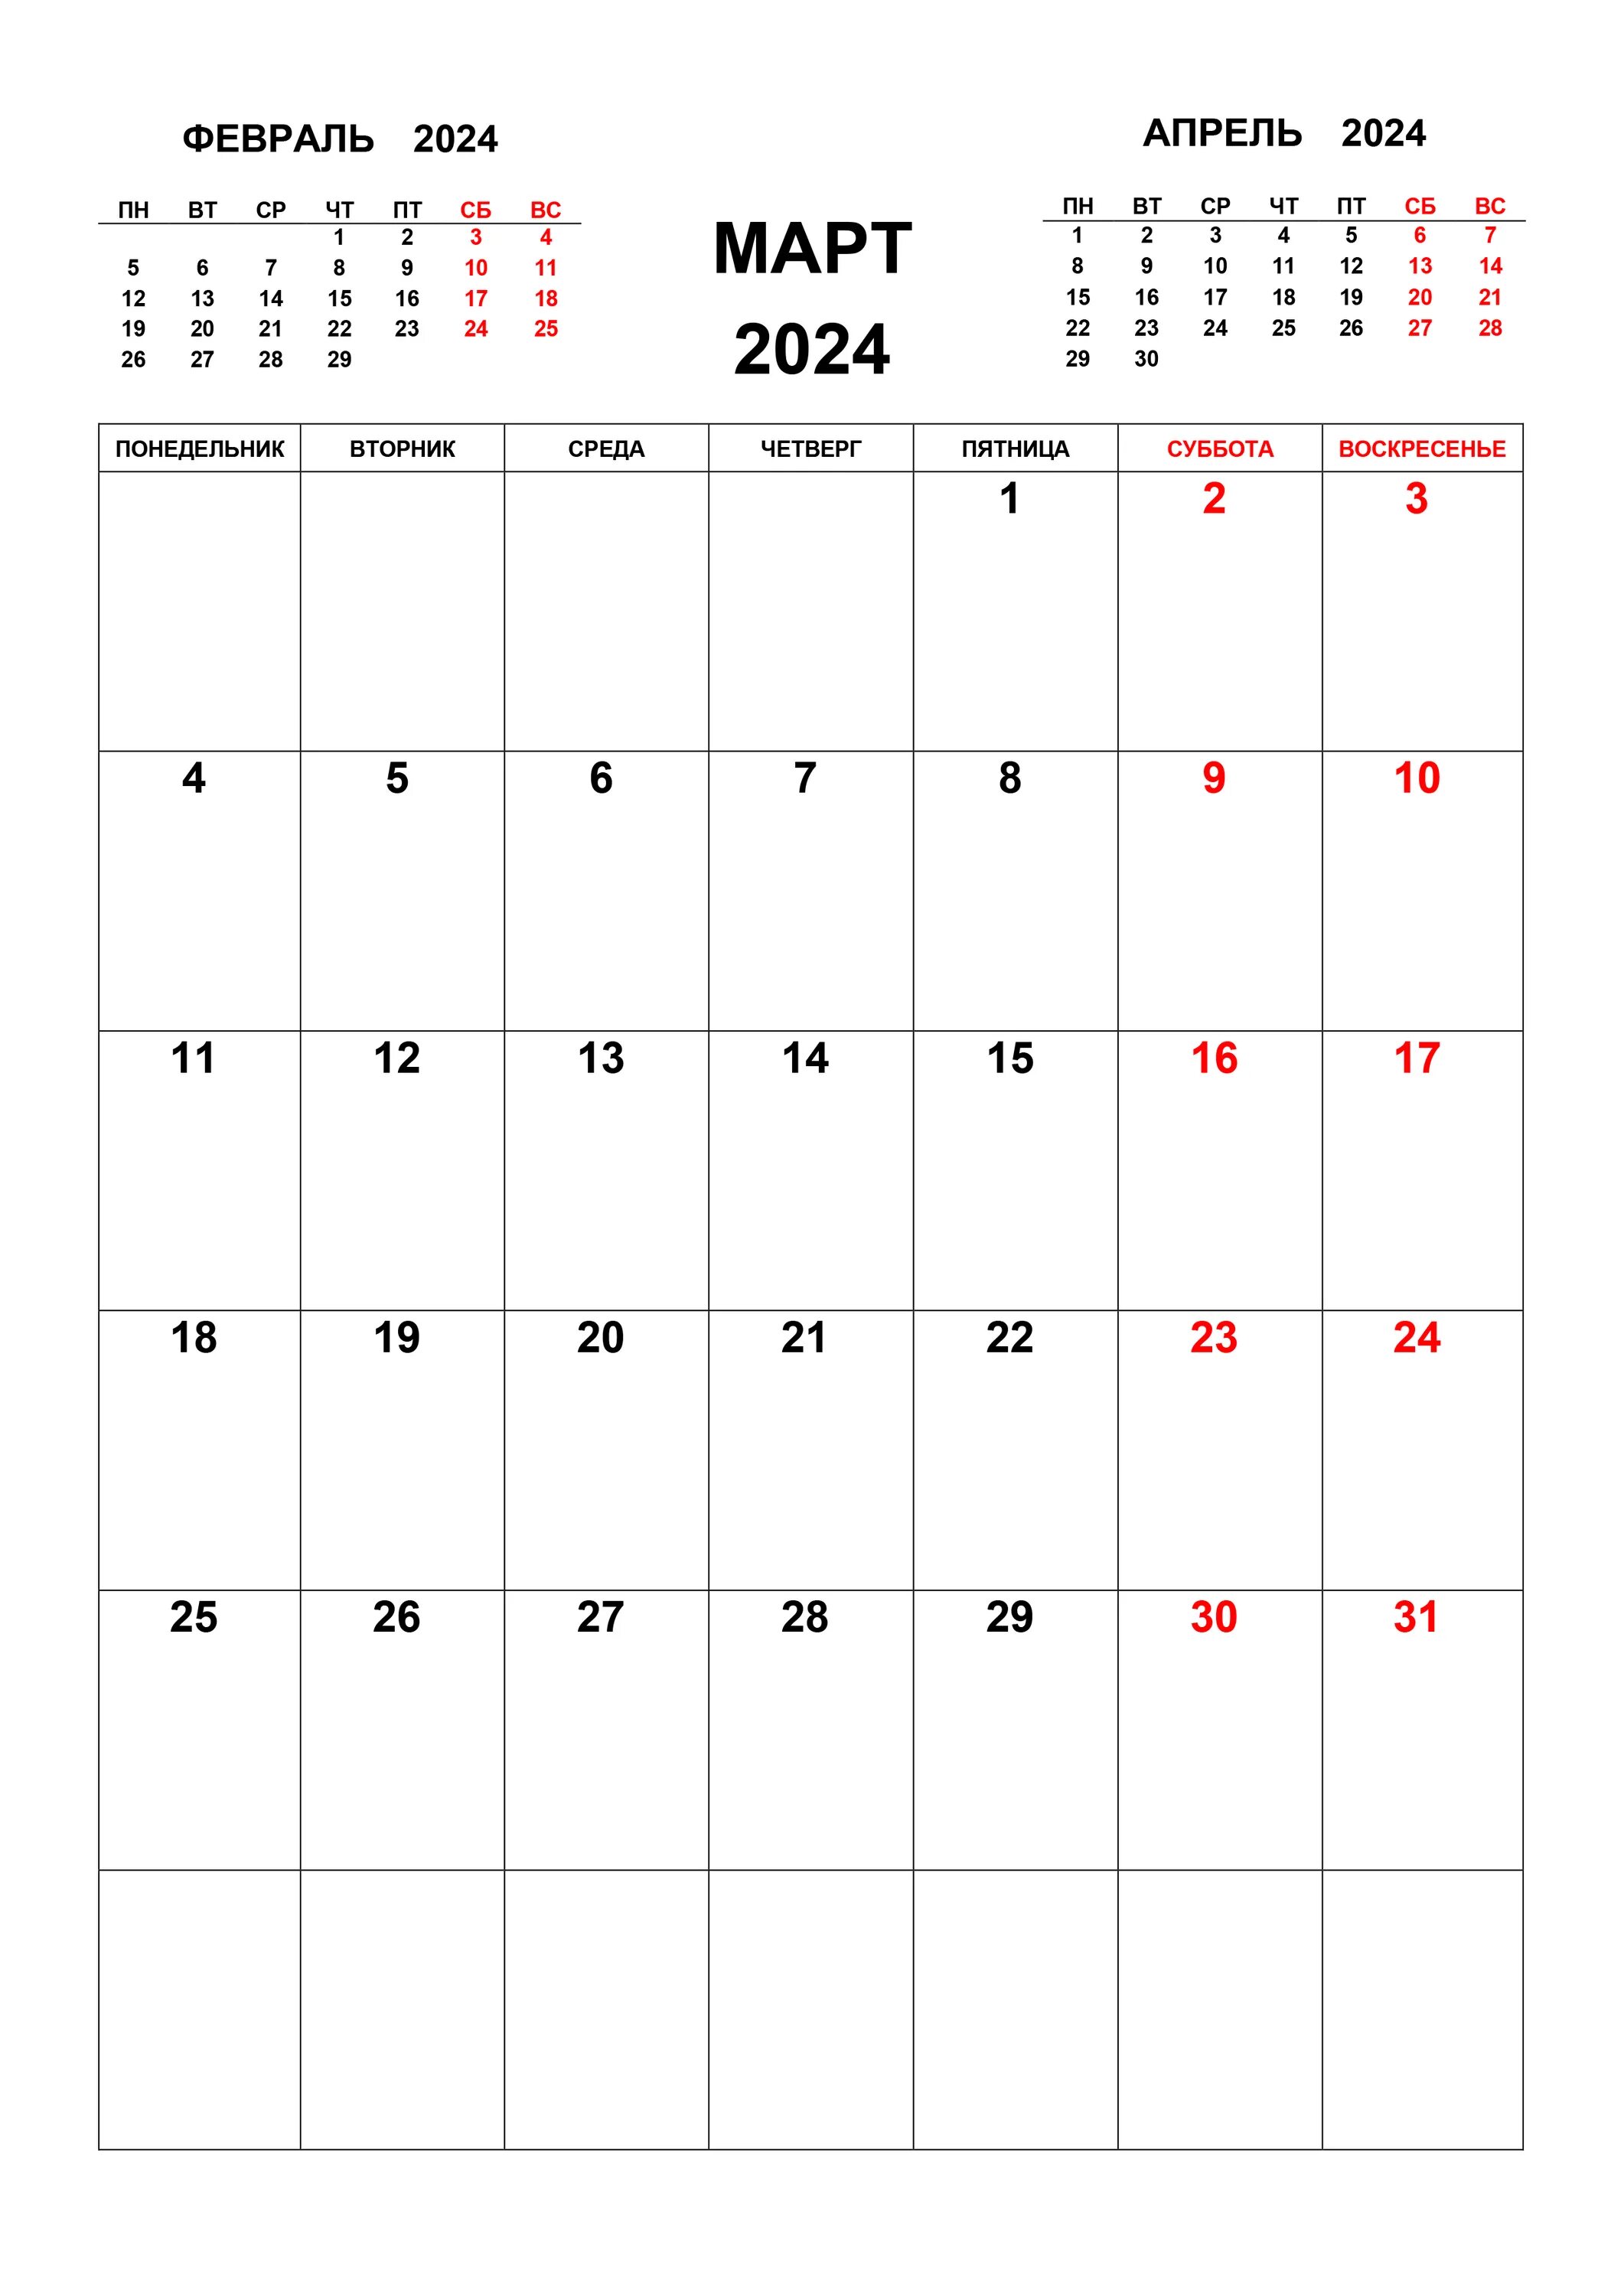 Дни в феврале 2024 года